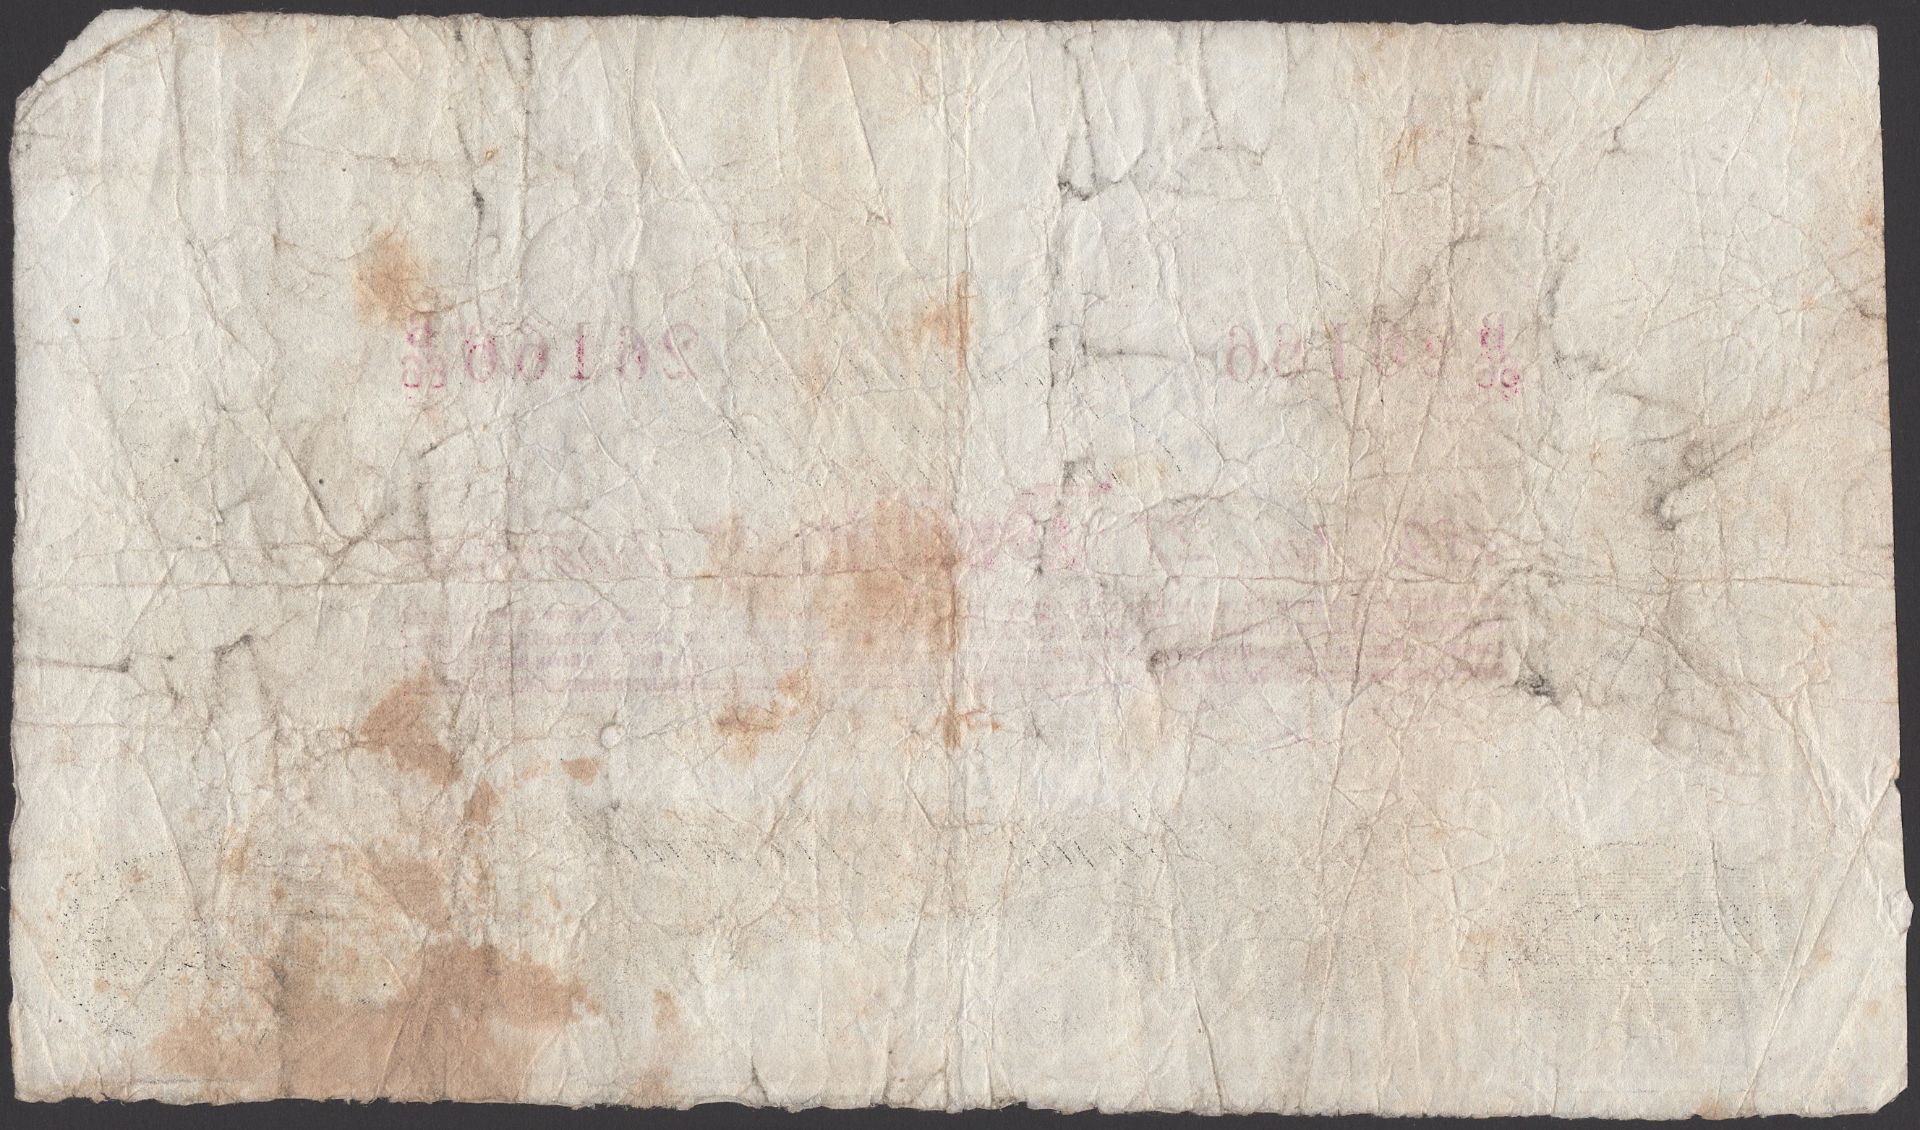 Bank of Ireland, Â£1, 27 June 1891, serial number B/66 26166, printed Vereker signature, nice... - Image 2 of 2